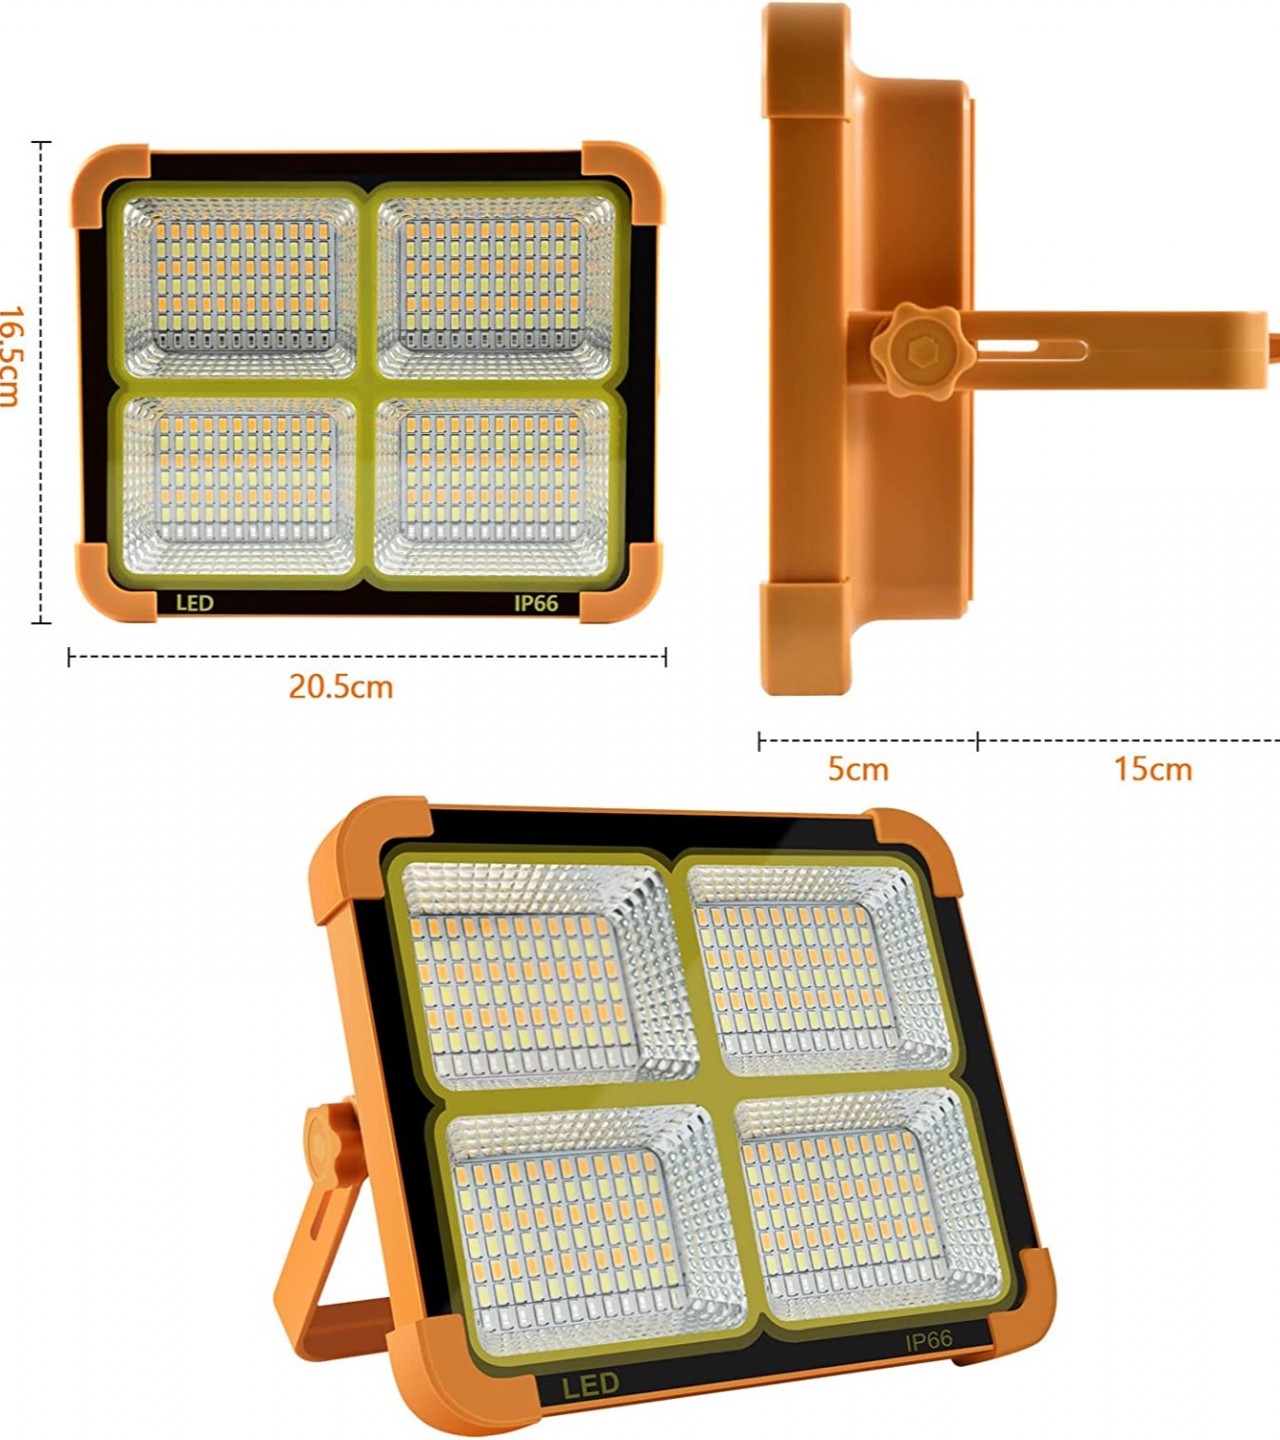 Solar Panel LED Flood Light 100W Emergency Portable Light & Power Bank For Mobile Phones Charging